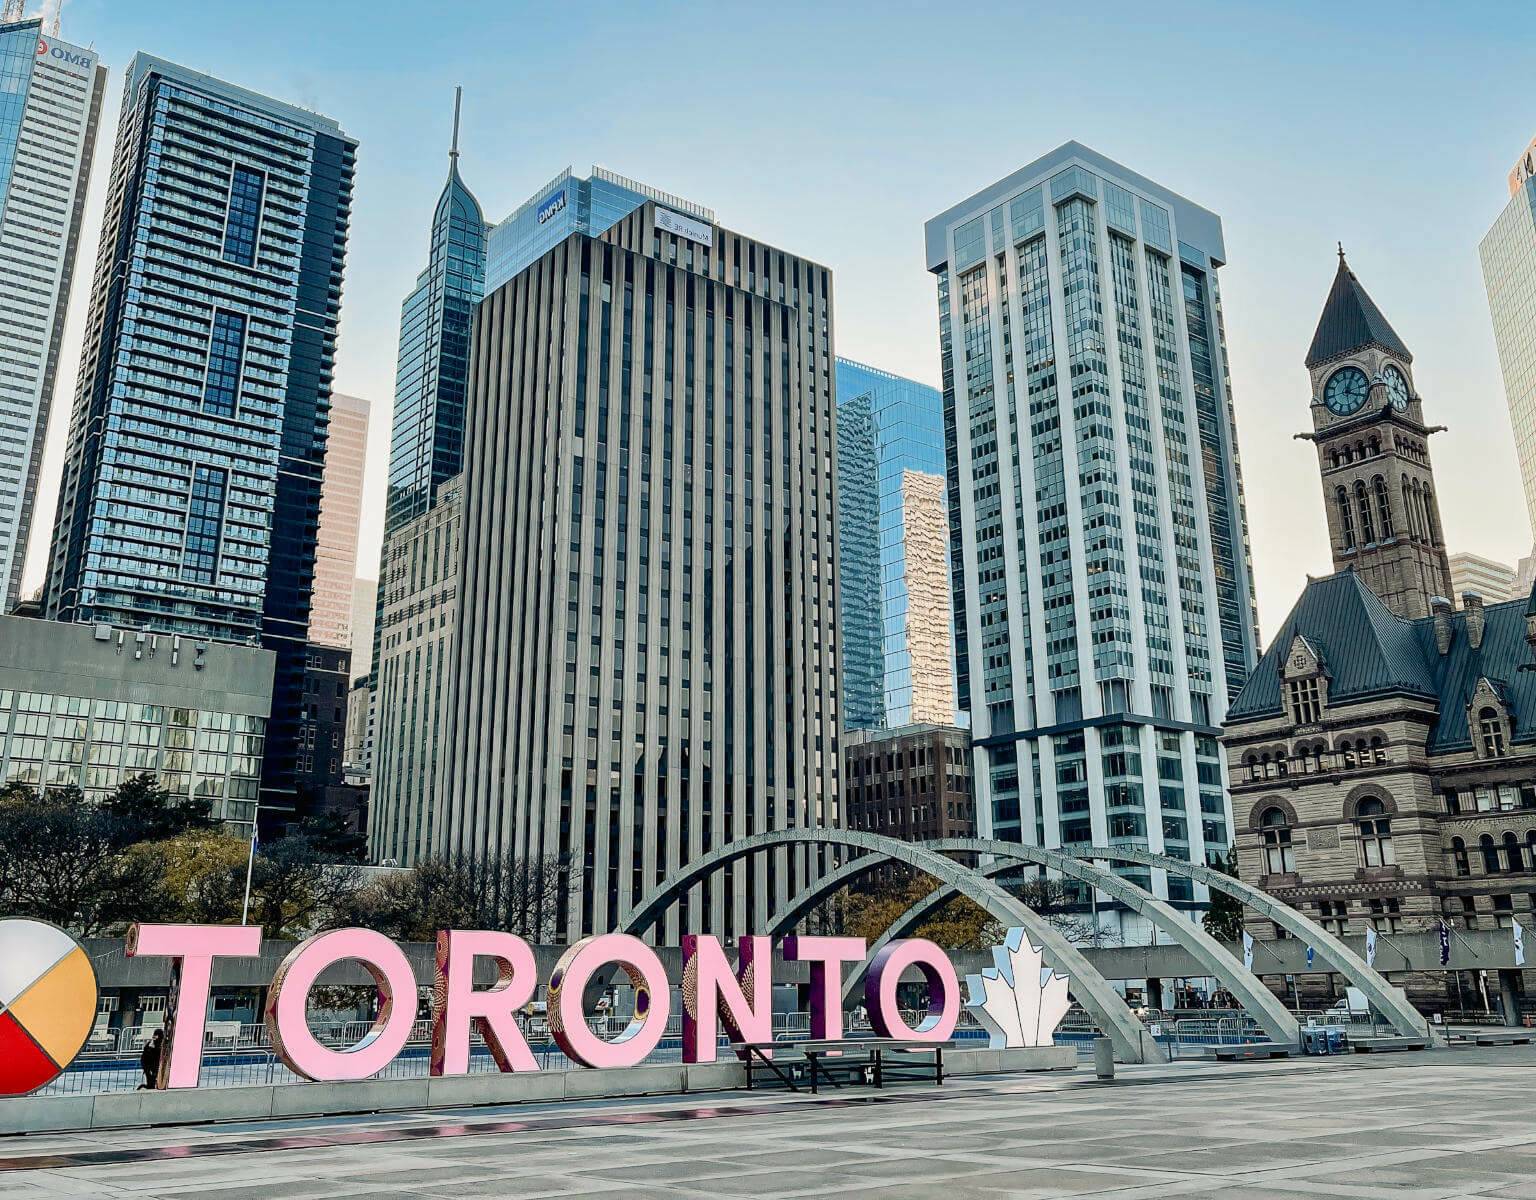 Das Toronto Sign ist nicht nur ein Highlight für die Fotos, man kann hier auch zwischen den Hochhäusern Schlittschuhlaufen.